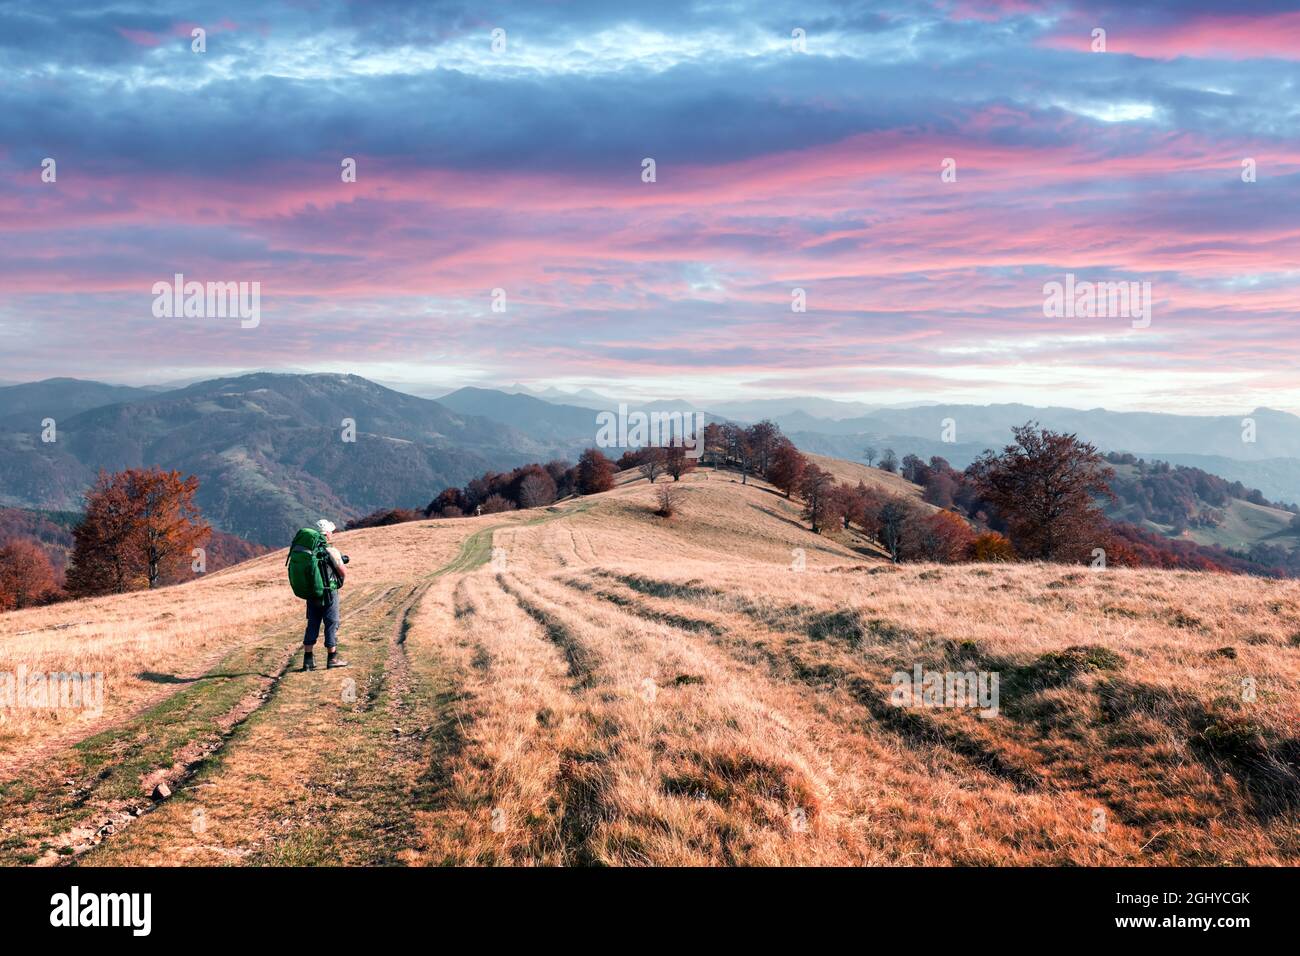 Backpacker dans un pré d'automne ensoleillé avec des hêtres orange. Montagnes des Carpates ukrainiennes. Photographie de paysage Banque D'Images